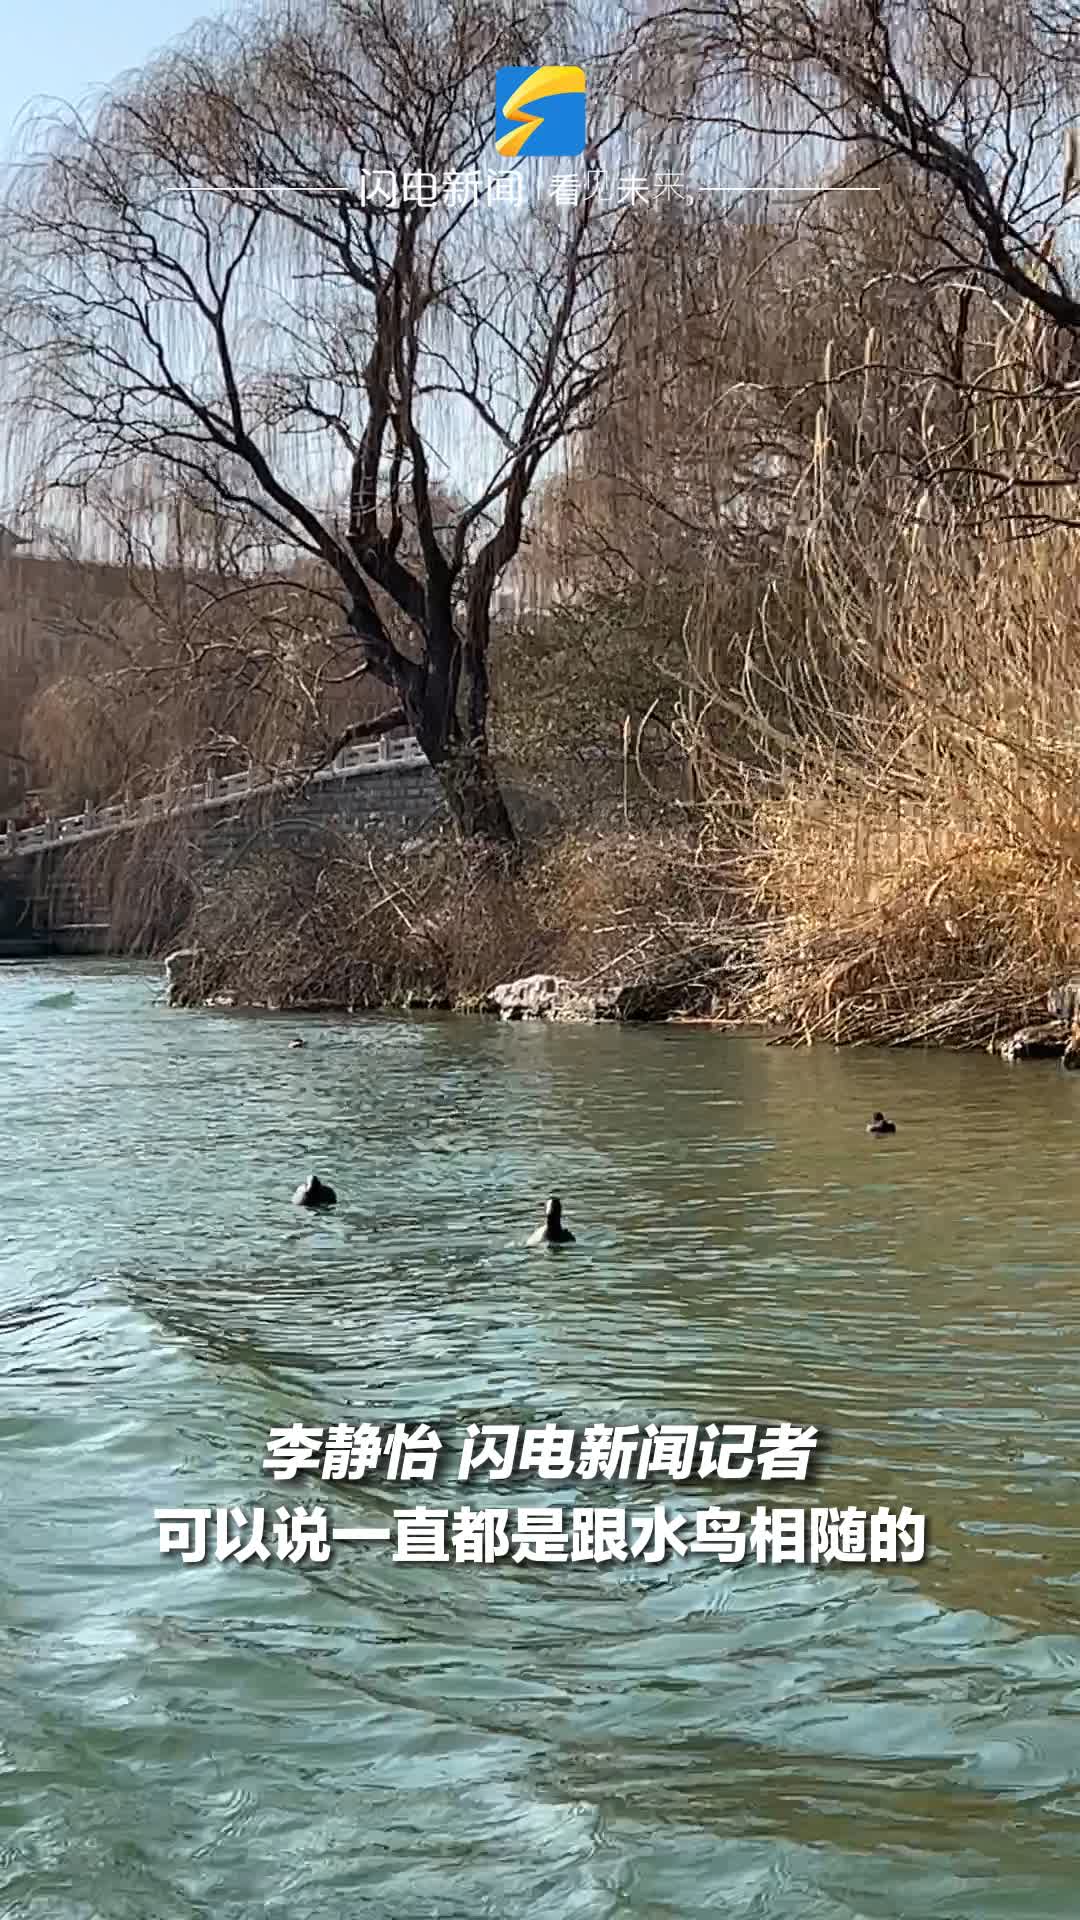 大明湖上乘船观鸟 解锁畅游济南老城“新玩法”